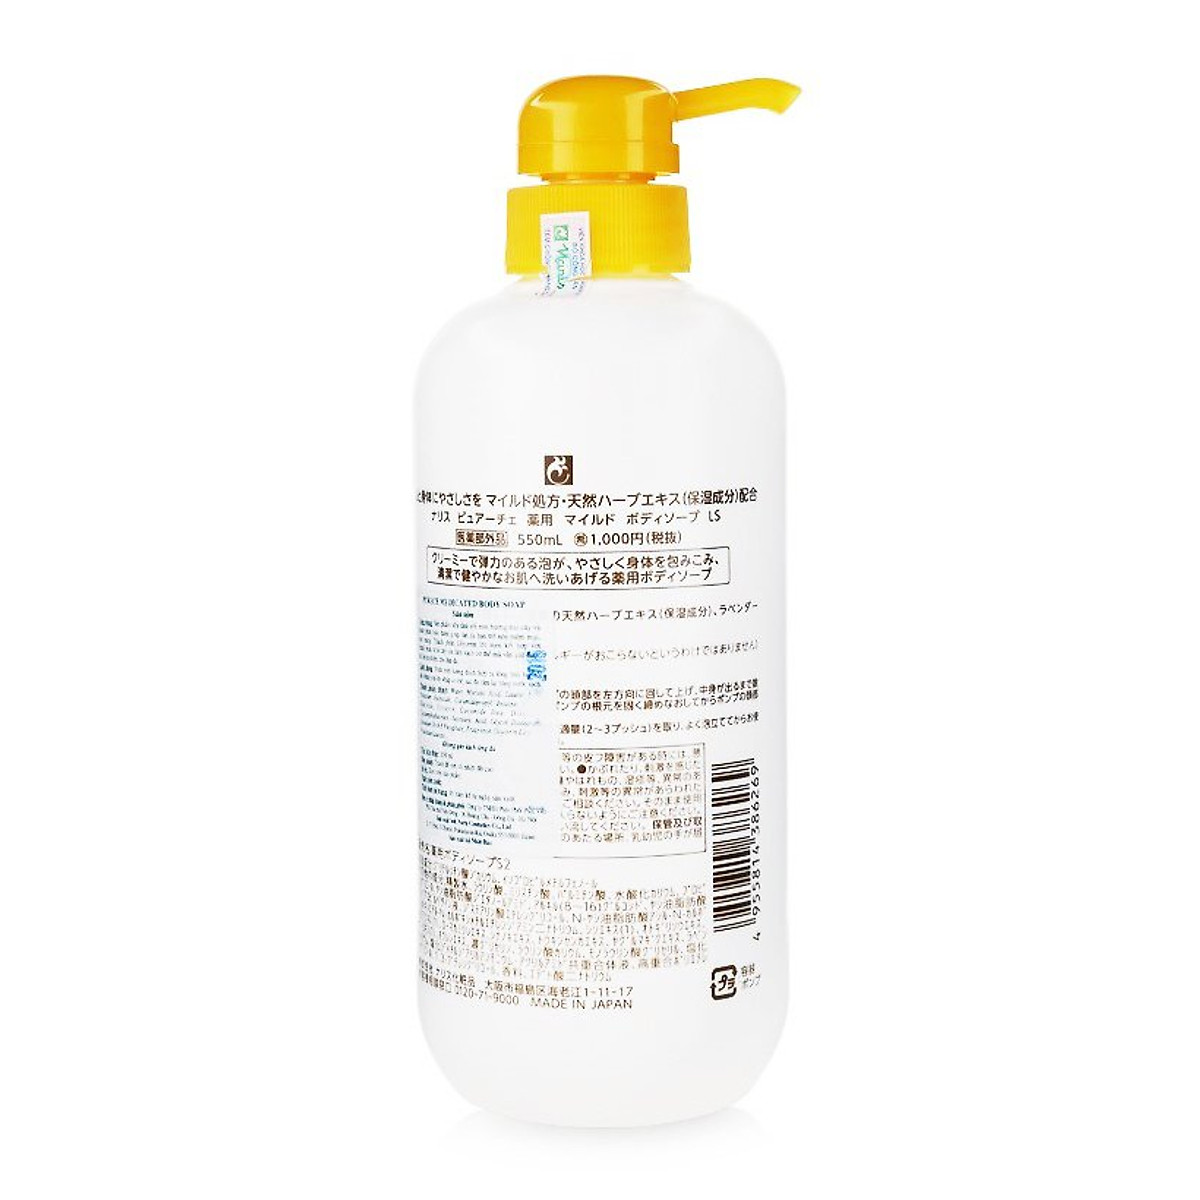 Sữa tắm Naris Purece Medicated Body Soap LS 550ml